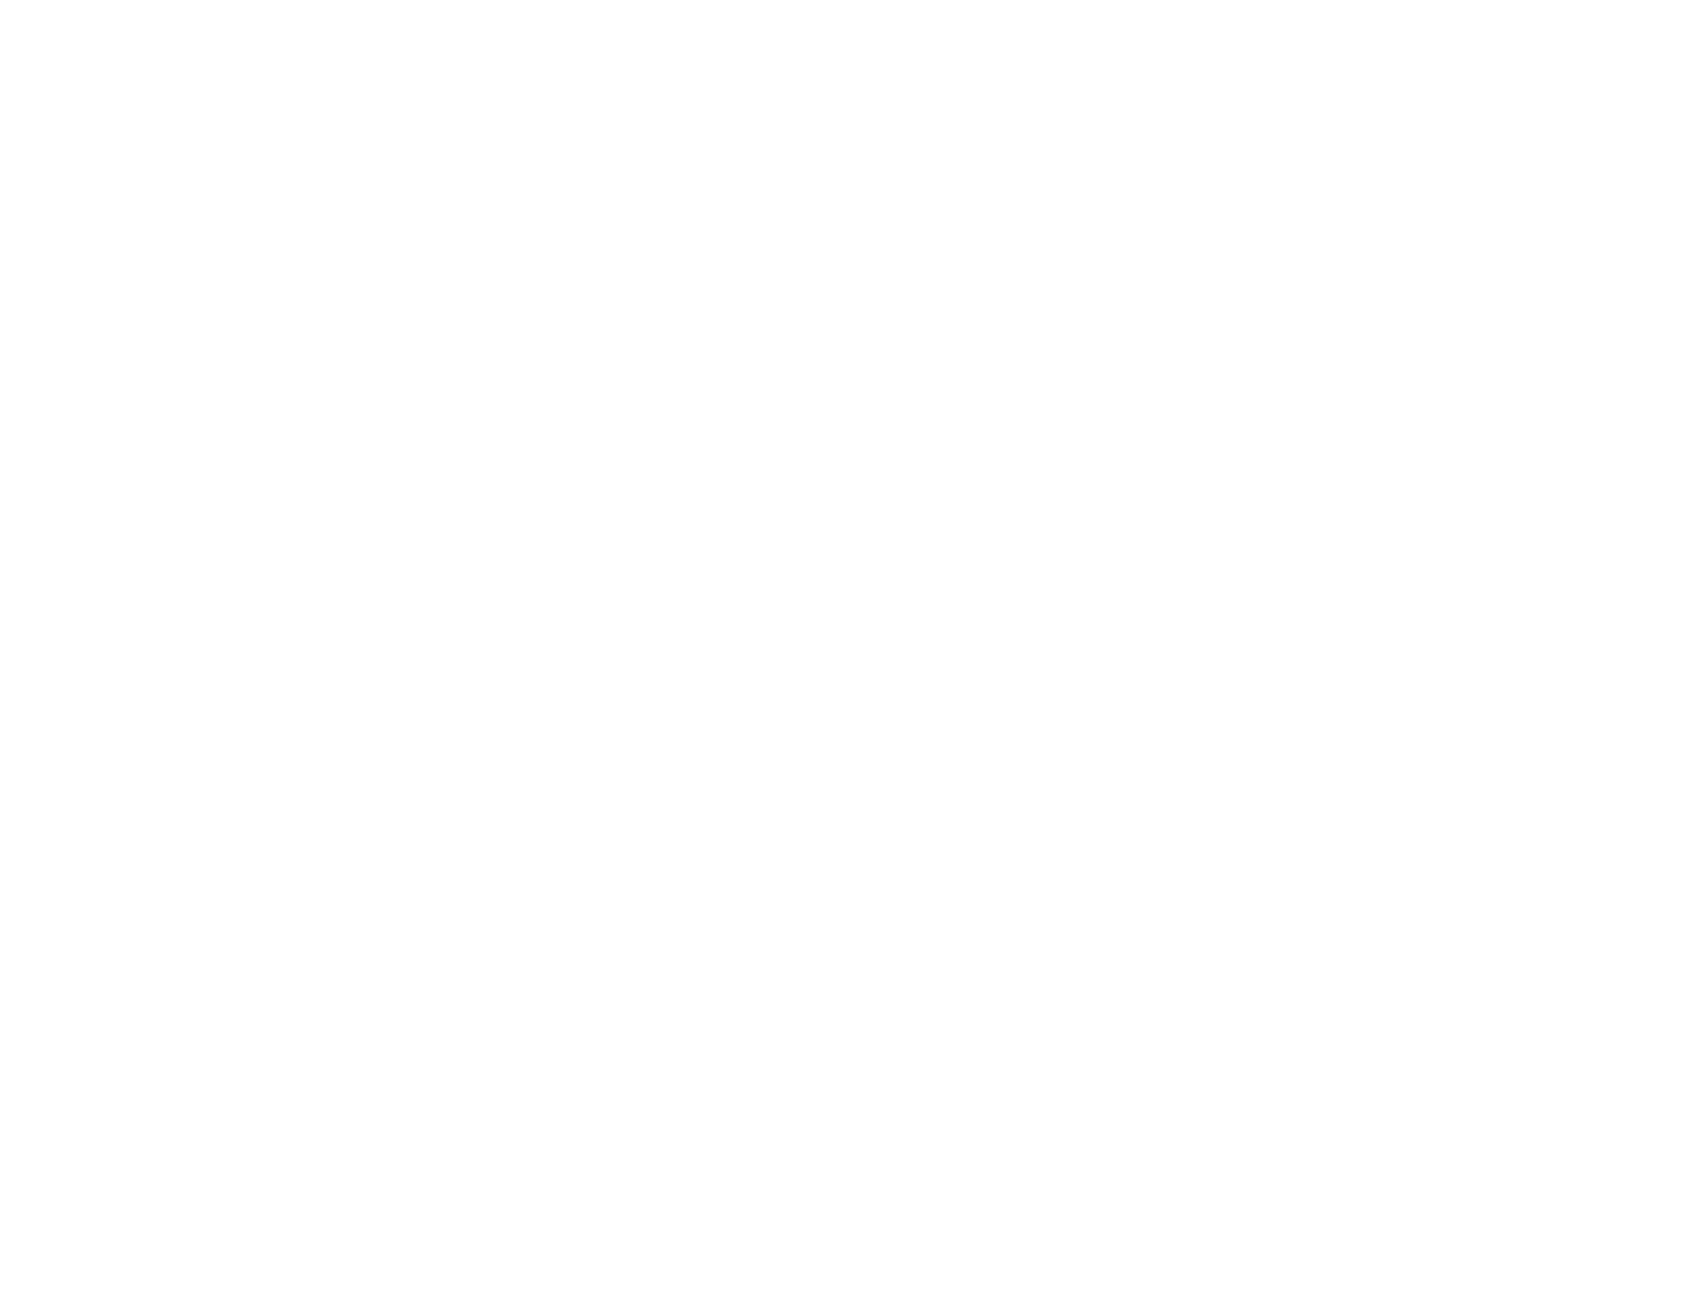 St. James's Place logo